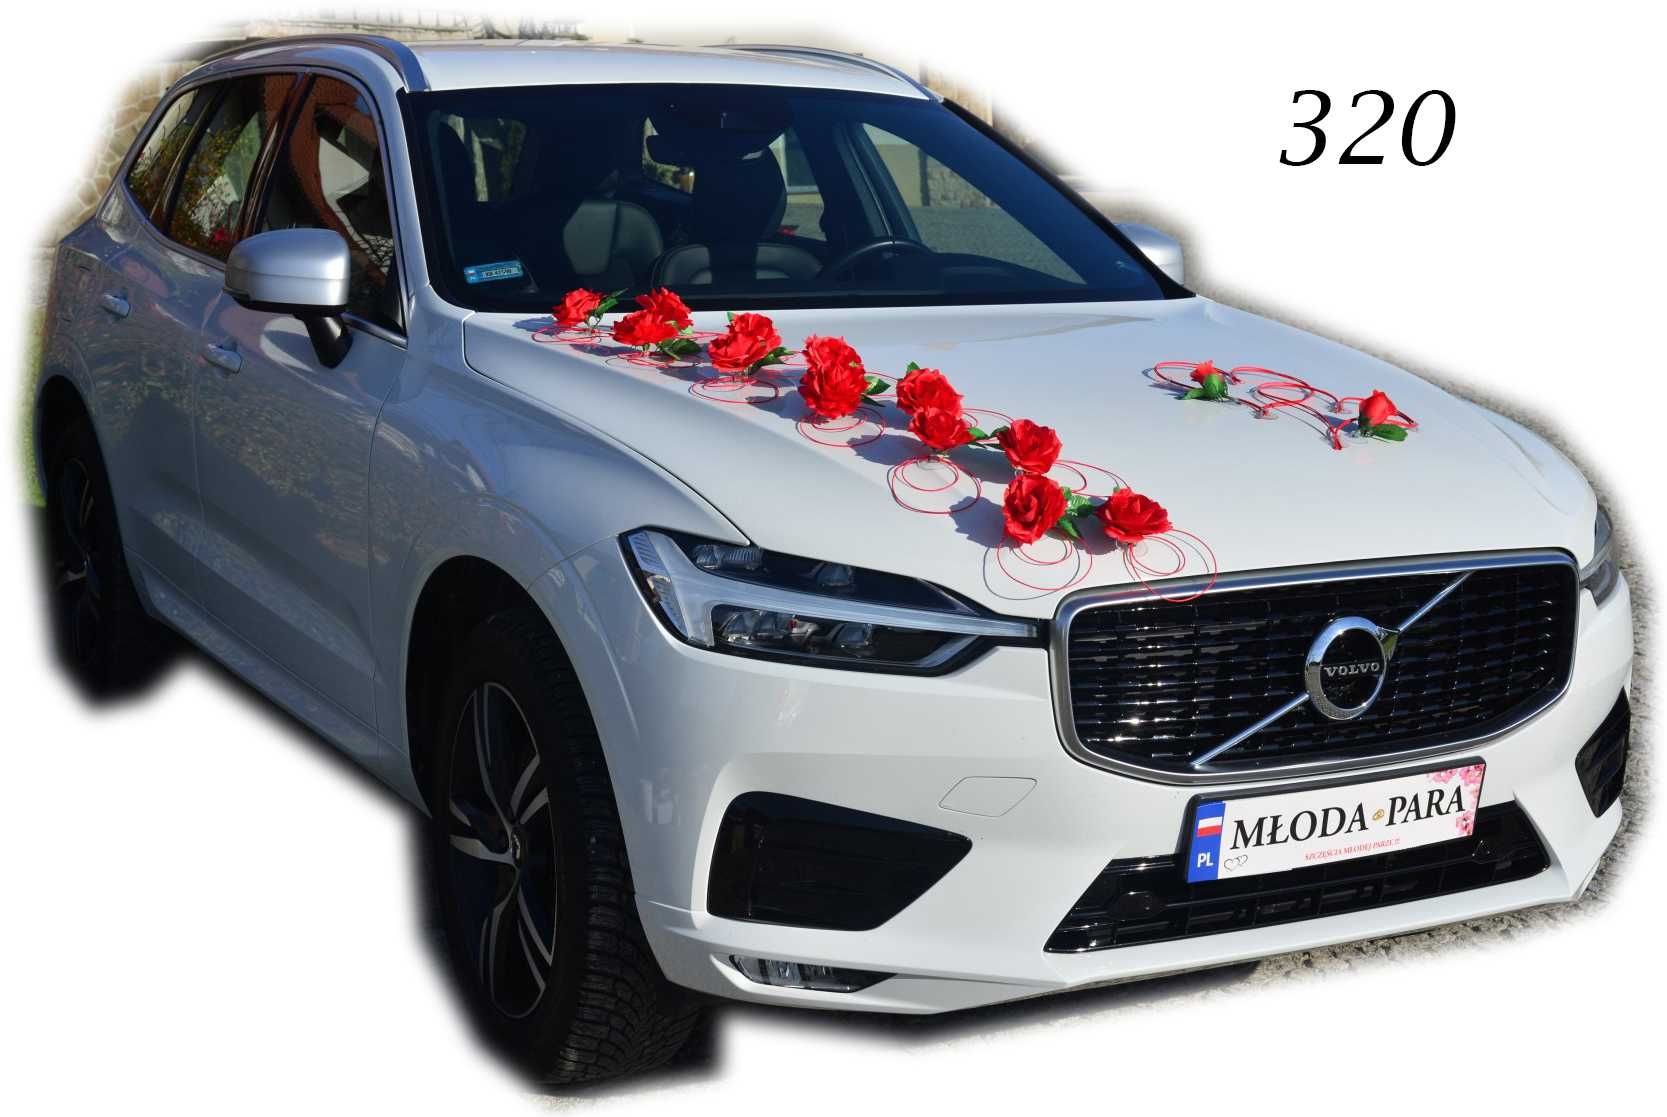 Dekoracja na samochód  komplet CZERWONA ozdoba na auto ślub 320